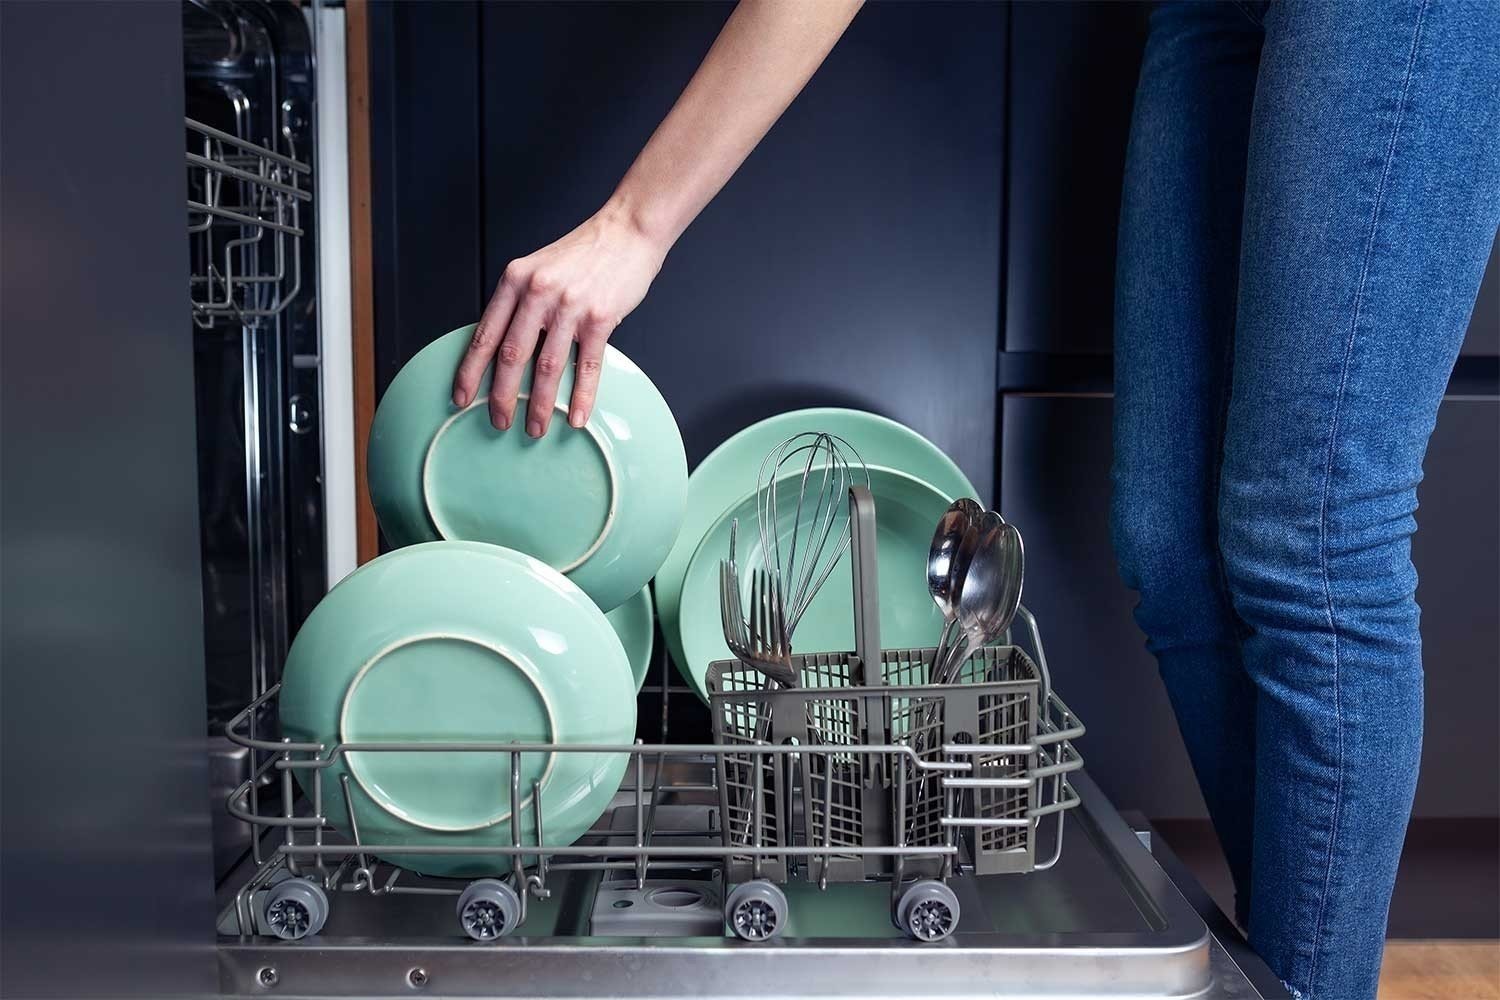 Посудомоечная машина с чистой посудой